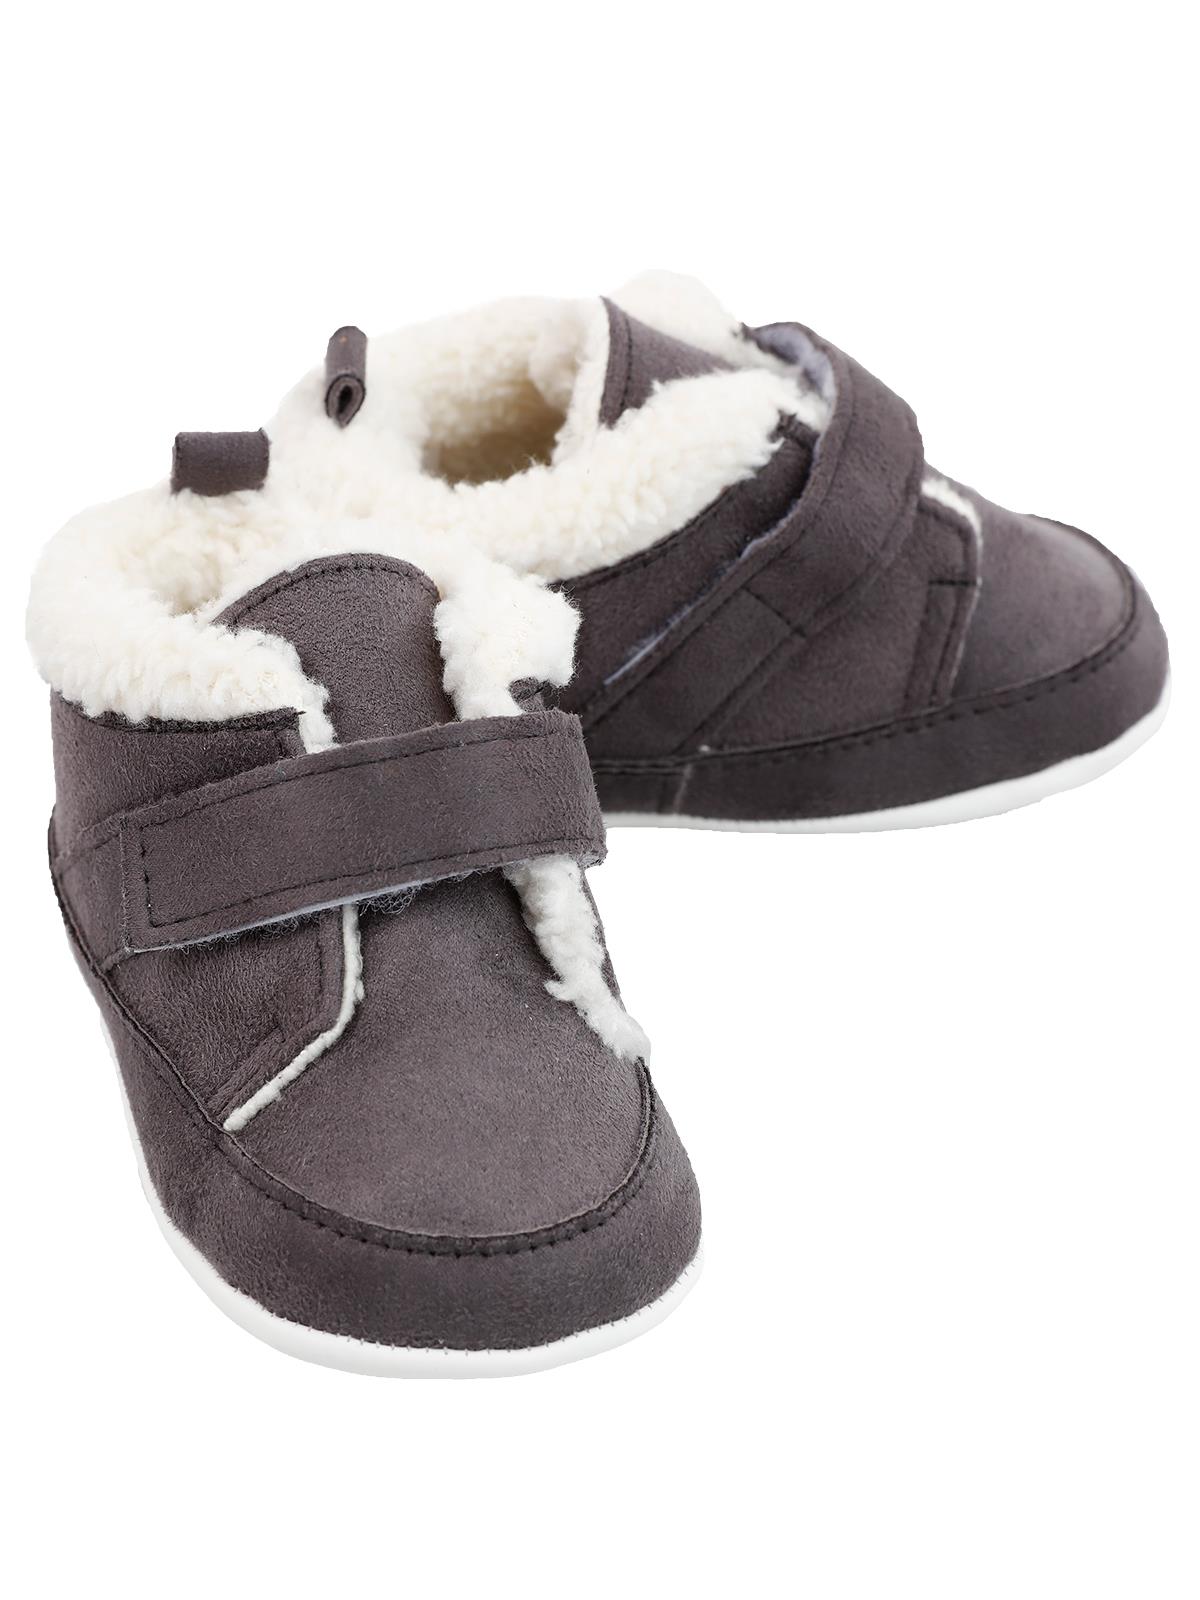 Civil Baby Erkek Bebek Patik Ayakkabı 17-19 Numara Antrasit